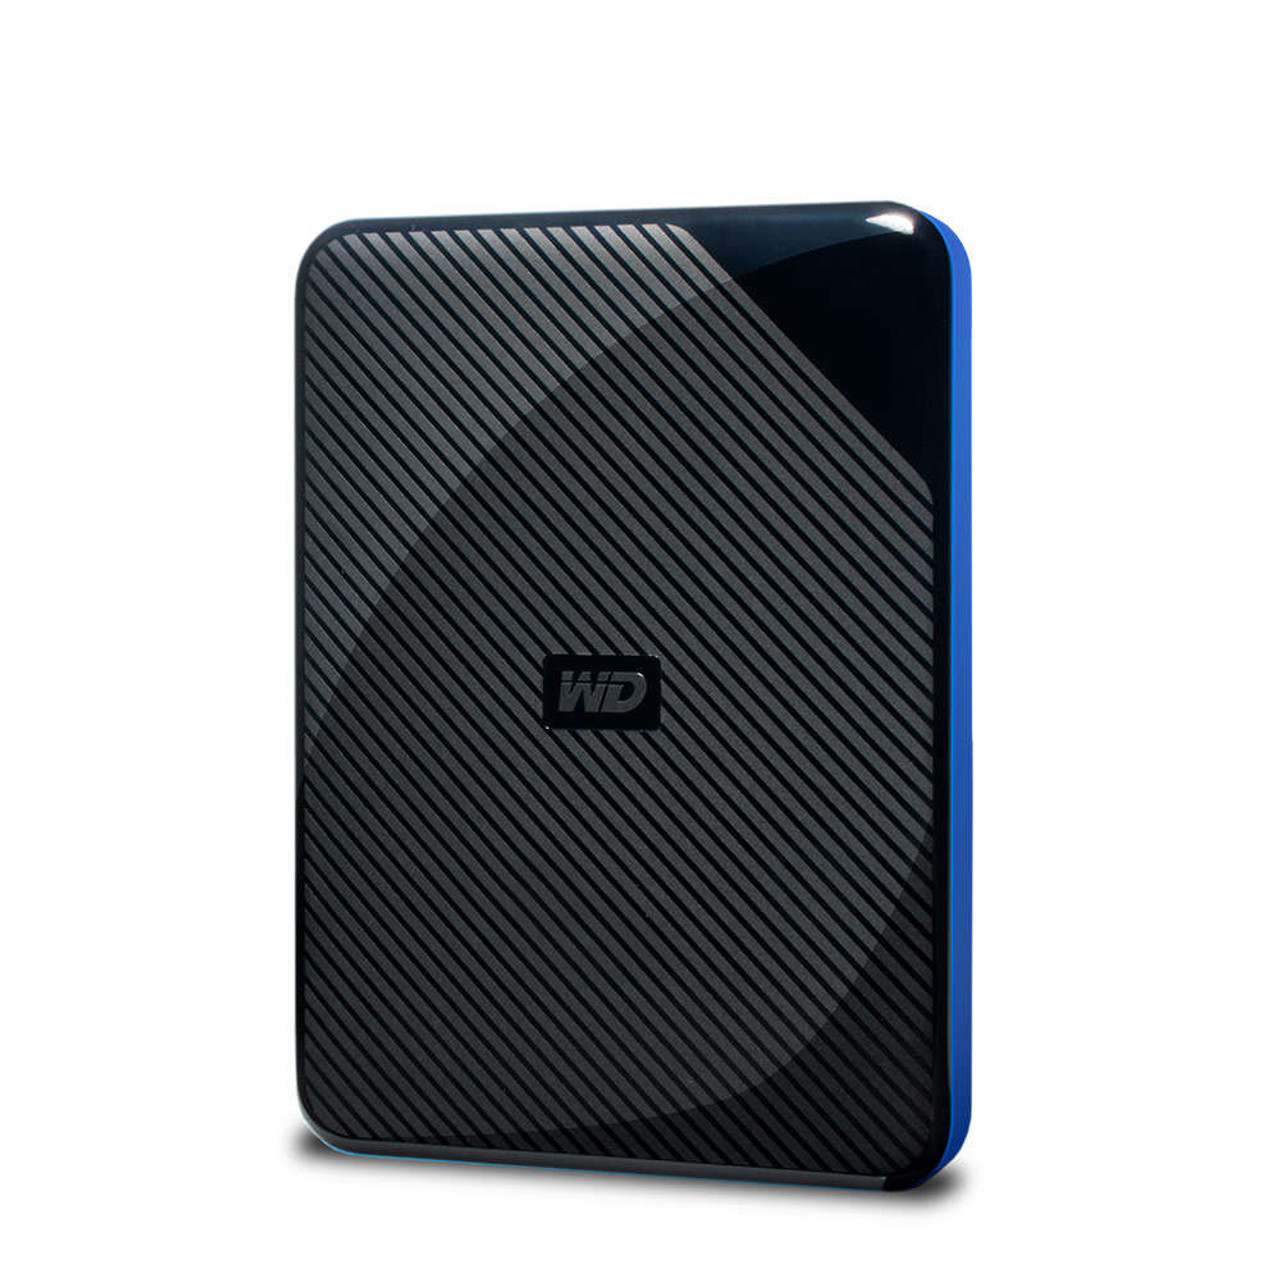 WDBM1M0040BBK-WESN | Western Digital | WDBDFF0020BBK-WESN external hard drive 4000 GB Black, Blue